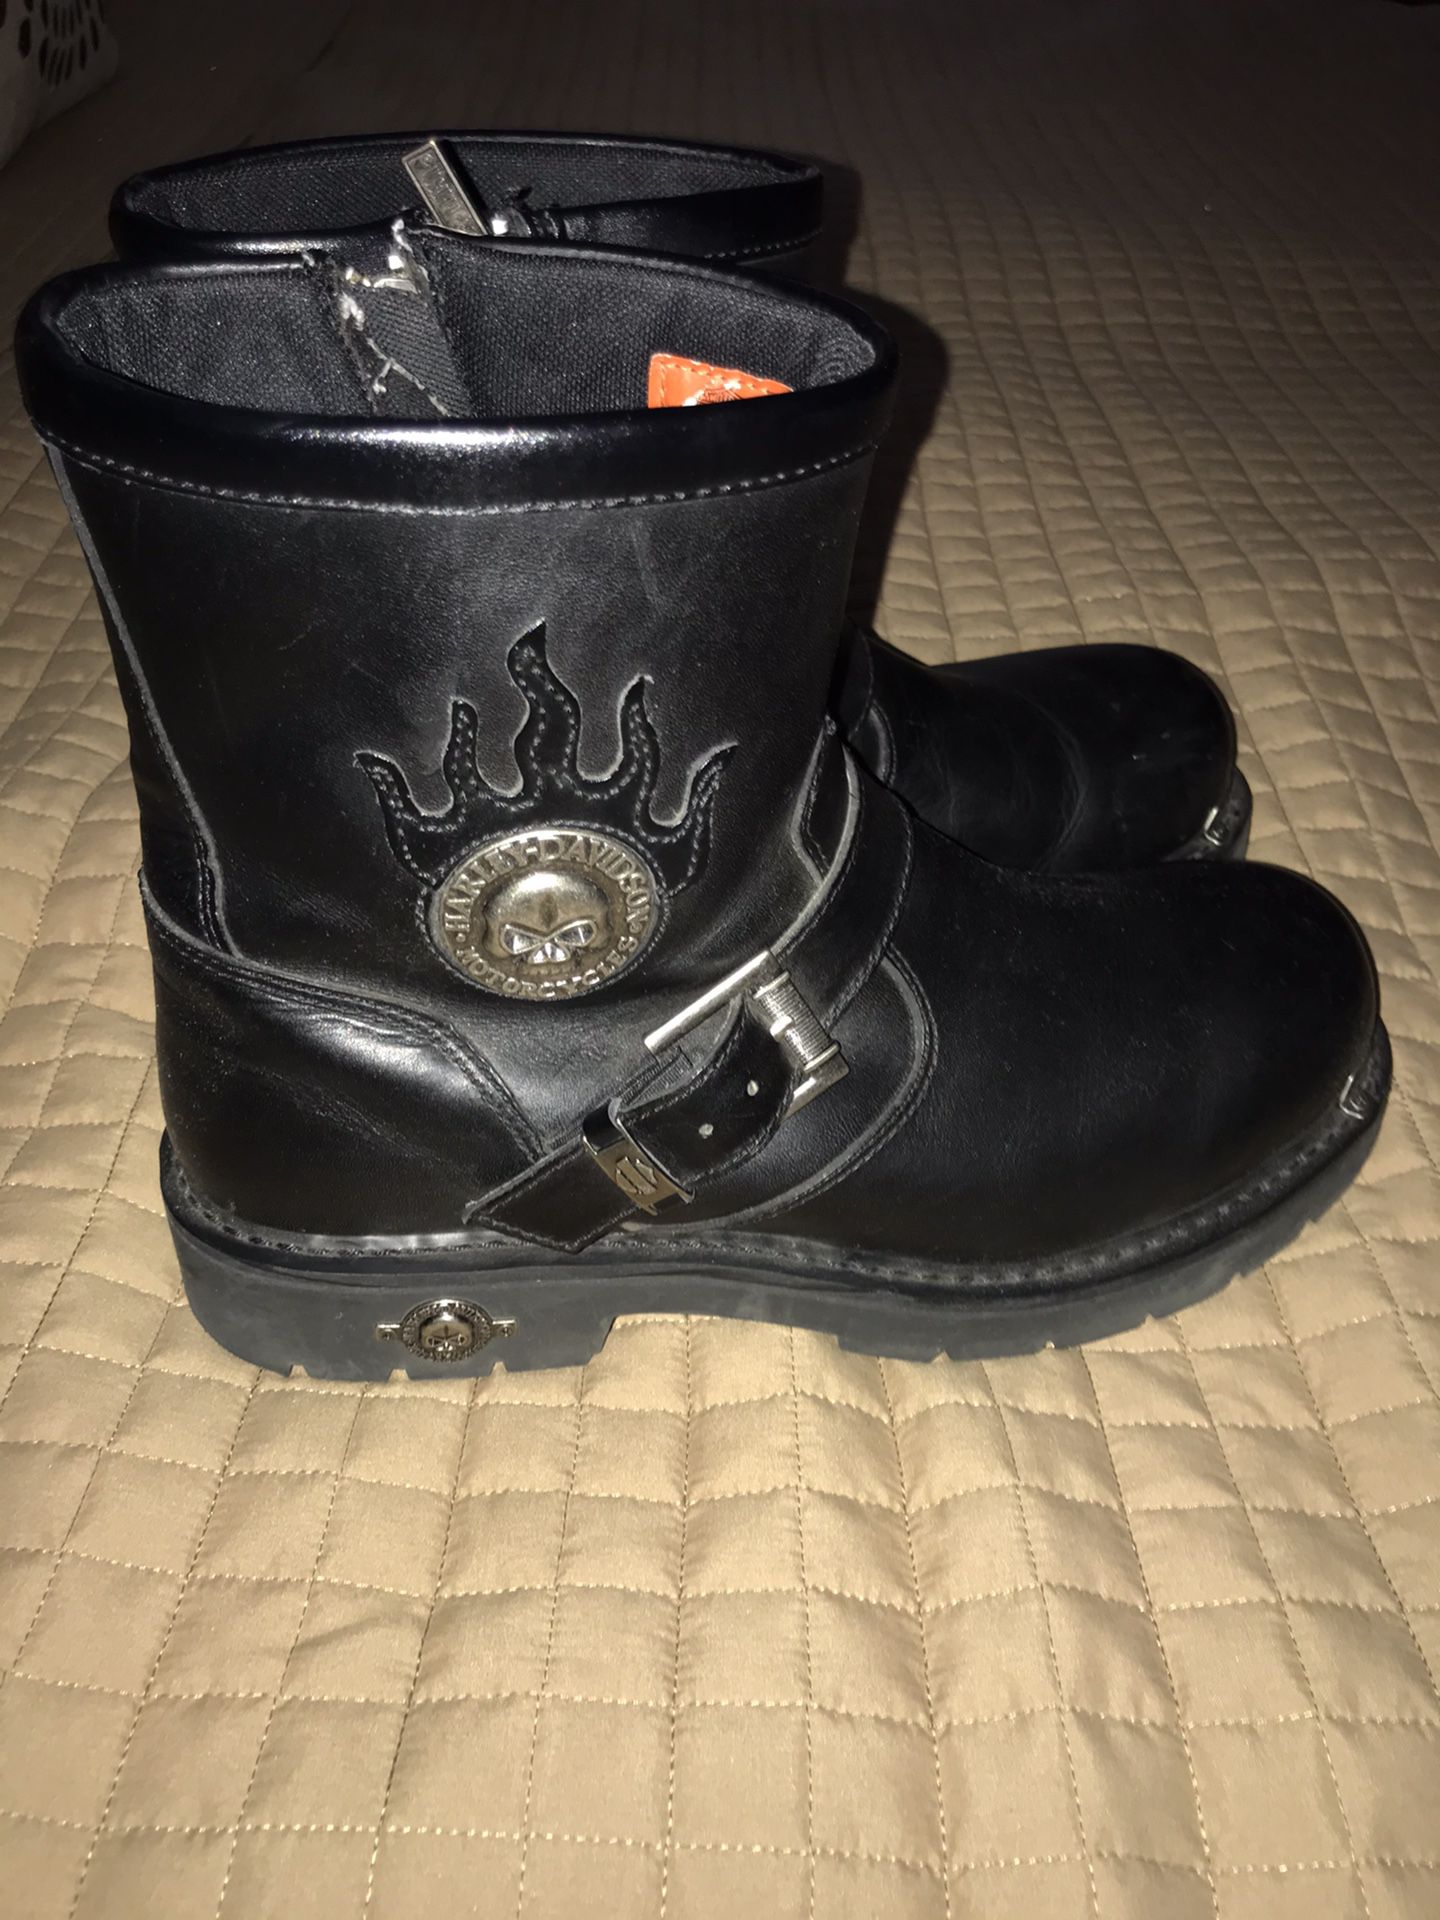 Harley-Davidson men’s boots